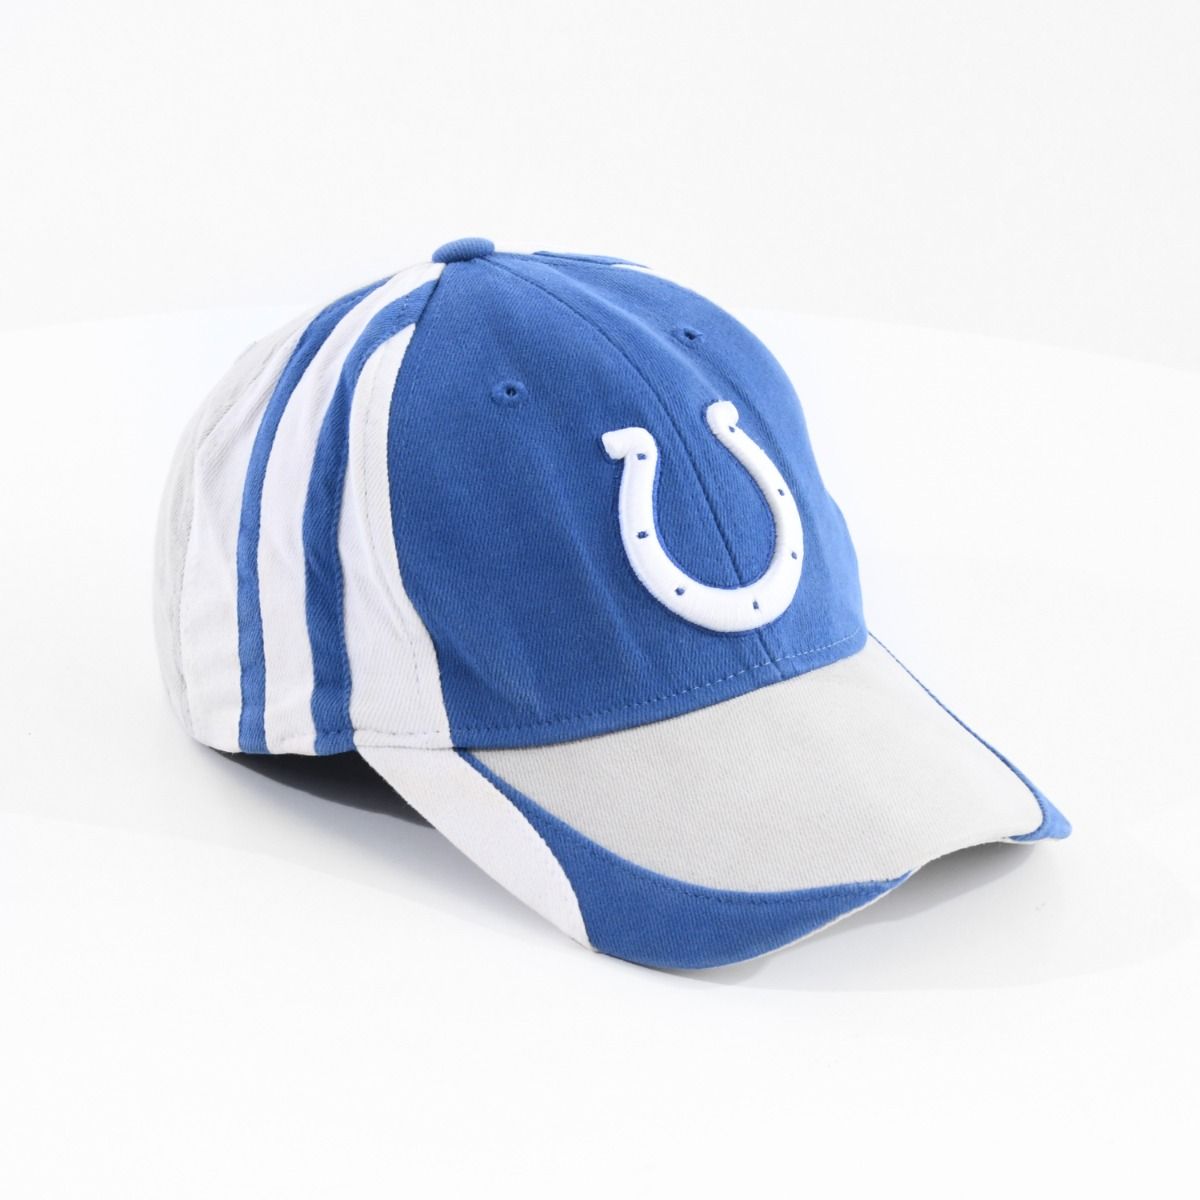 Indianapolis Colts Reebok Baseball Cap